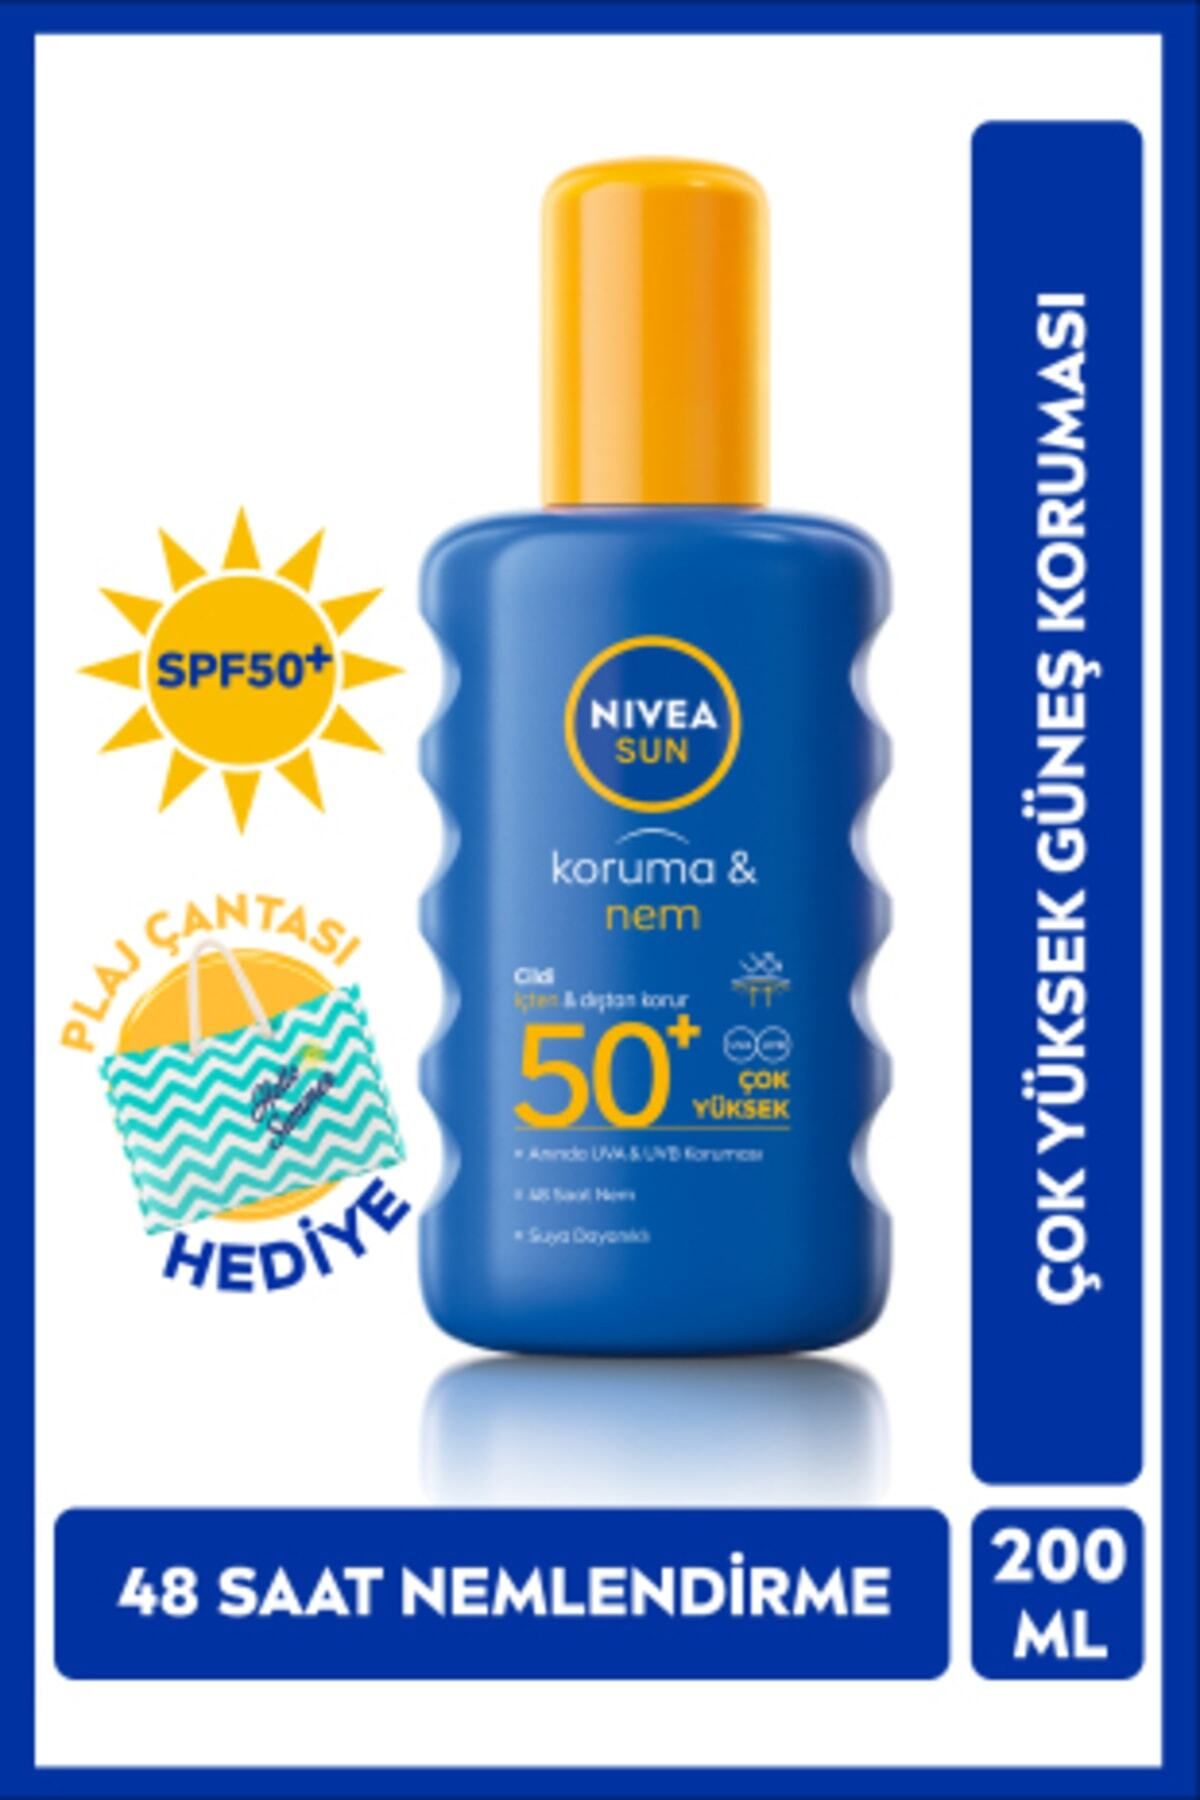 NIVEA Sun SPF 50+ Koruma & 48 Saat Nemlendirme Güneş Kremi 200 ml Sprey,Plaj Çantası Hediye